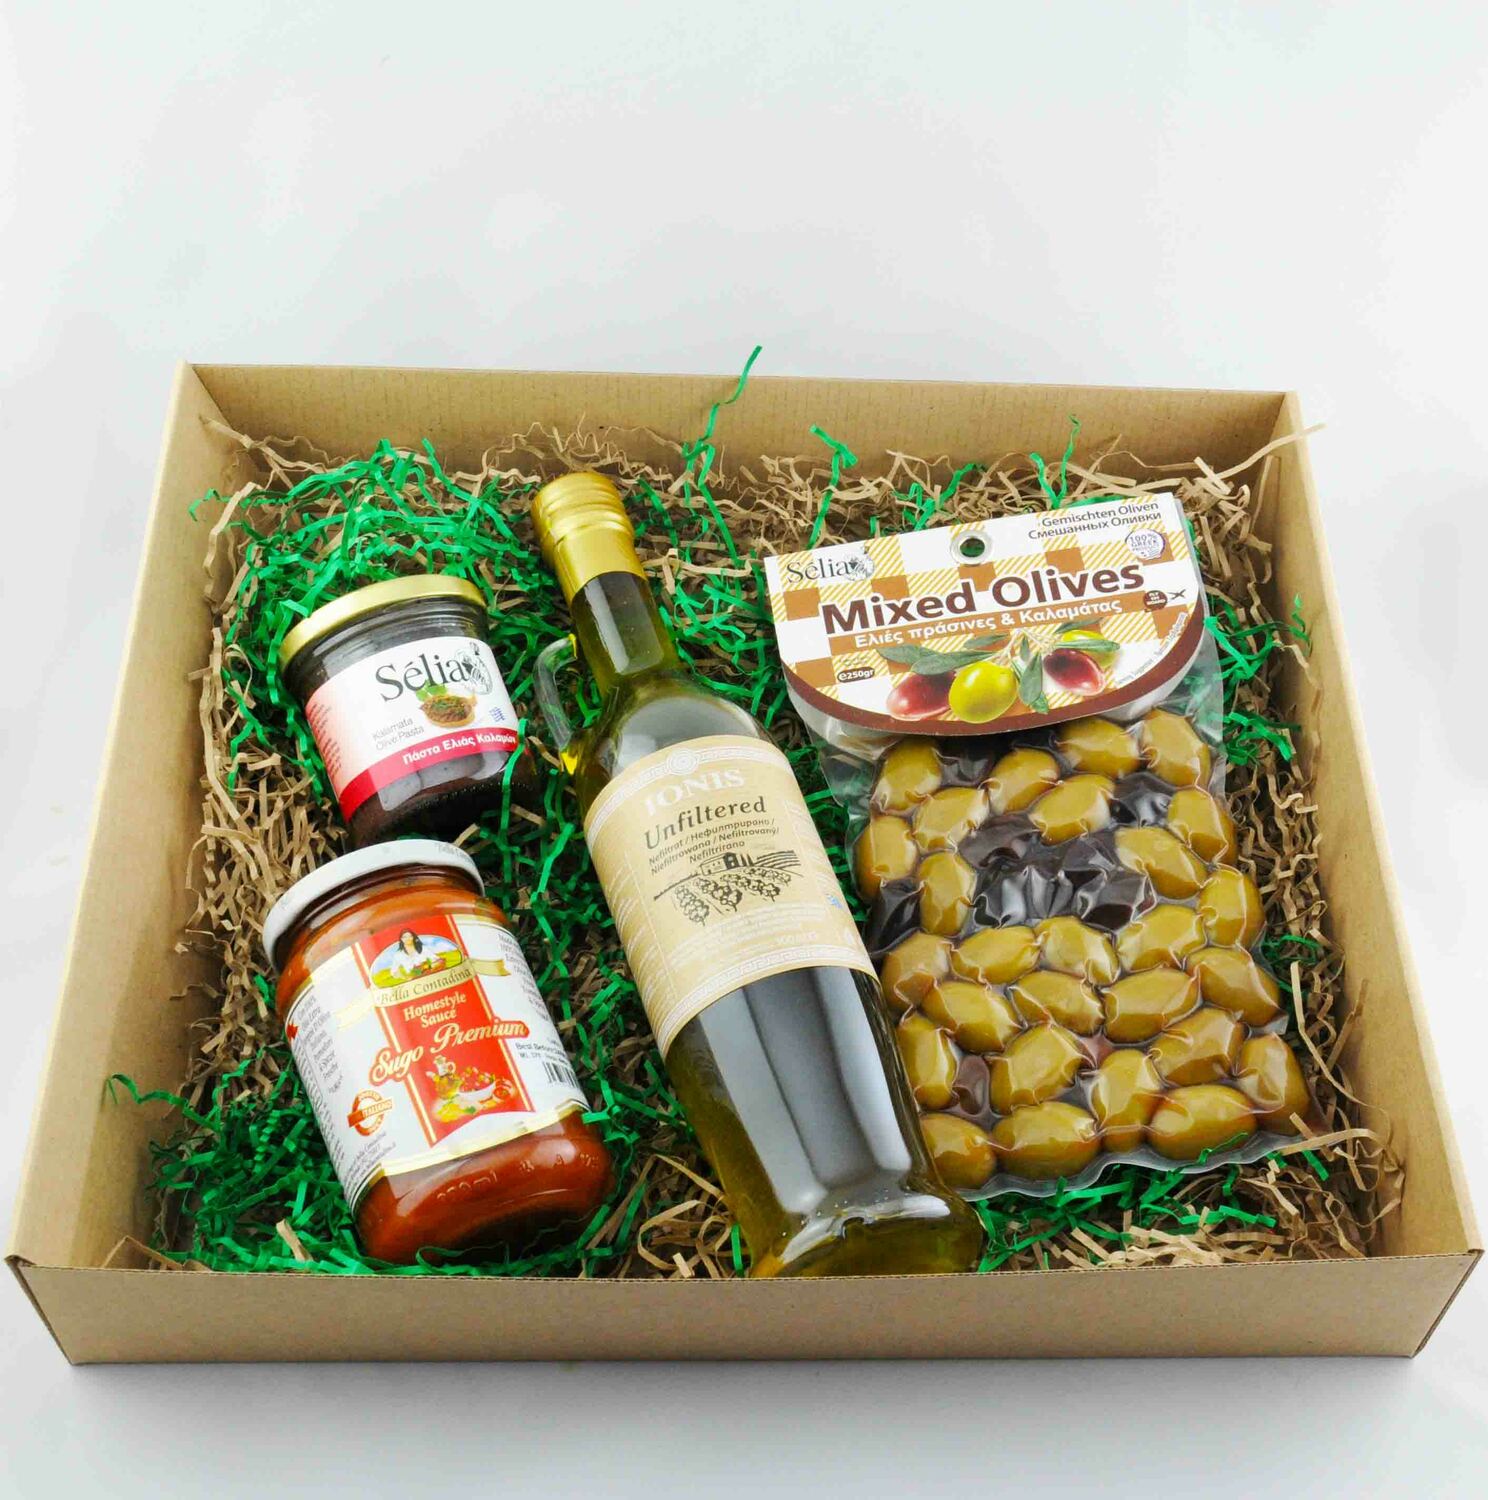 Масло оливковое подарочное. Подарочный набор с оливковым маслом. Подарочные продуктовые наборы. Наборы с оливковым маслом в подарок. Подарочный набор с оливками.